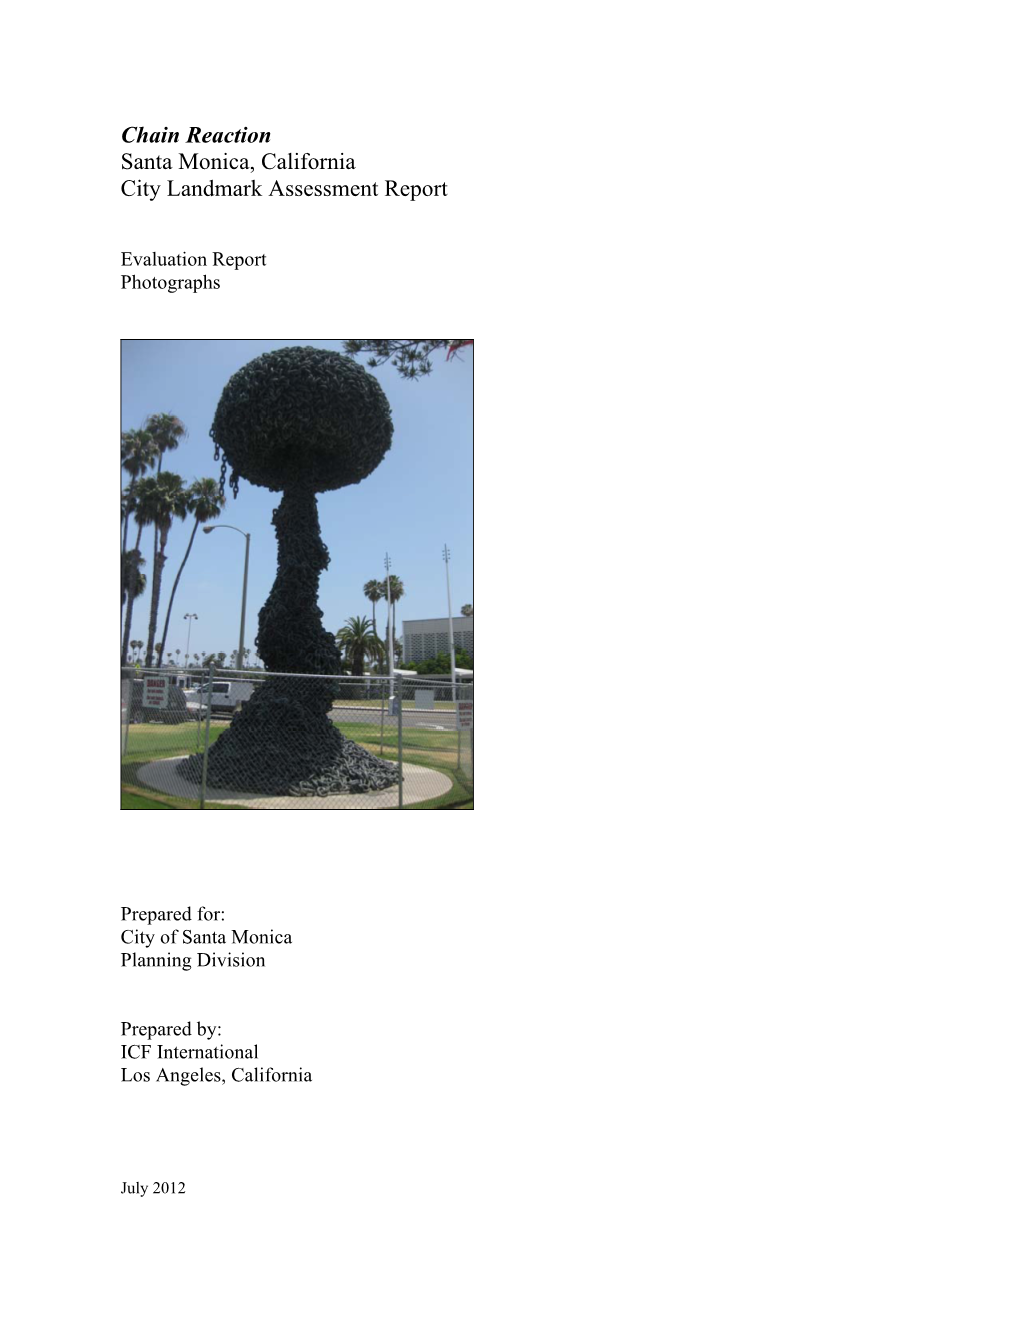 Chain Reaction Santa Monica, California City Landmark Assessment Report